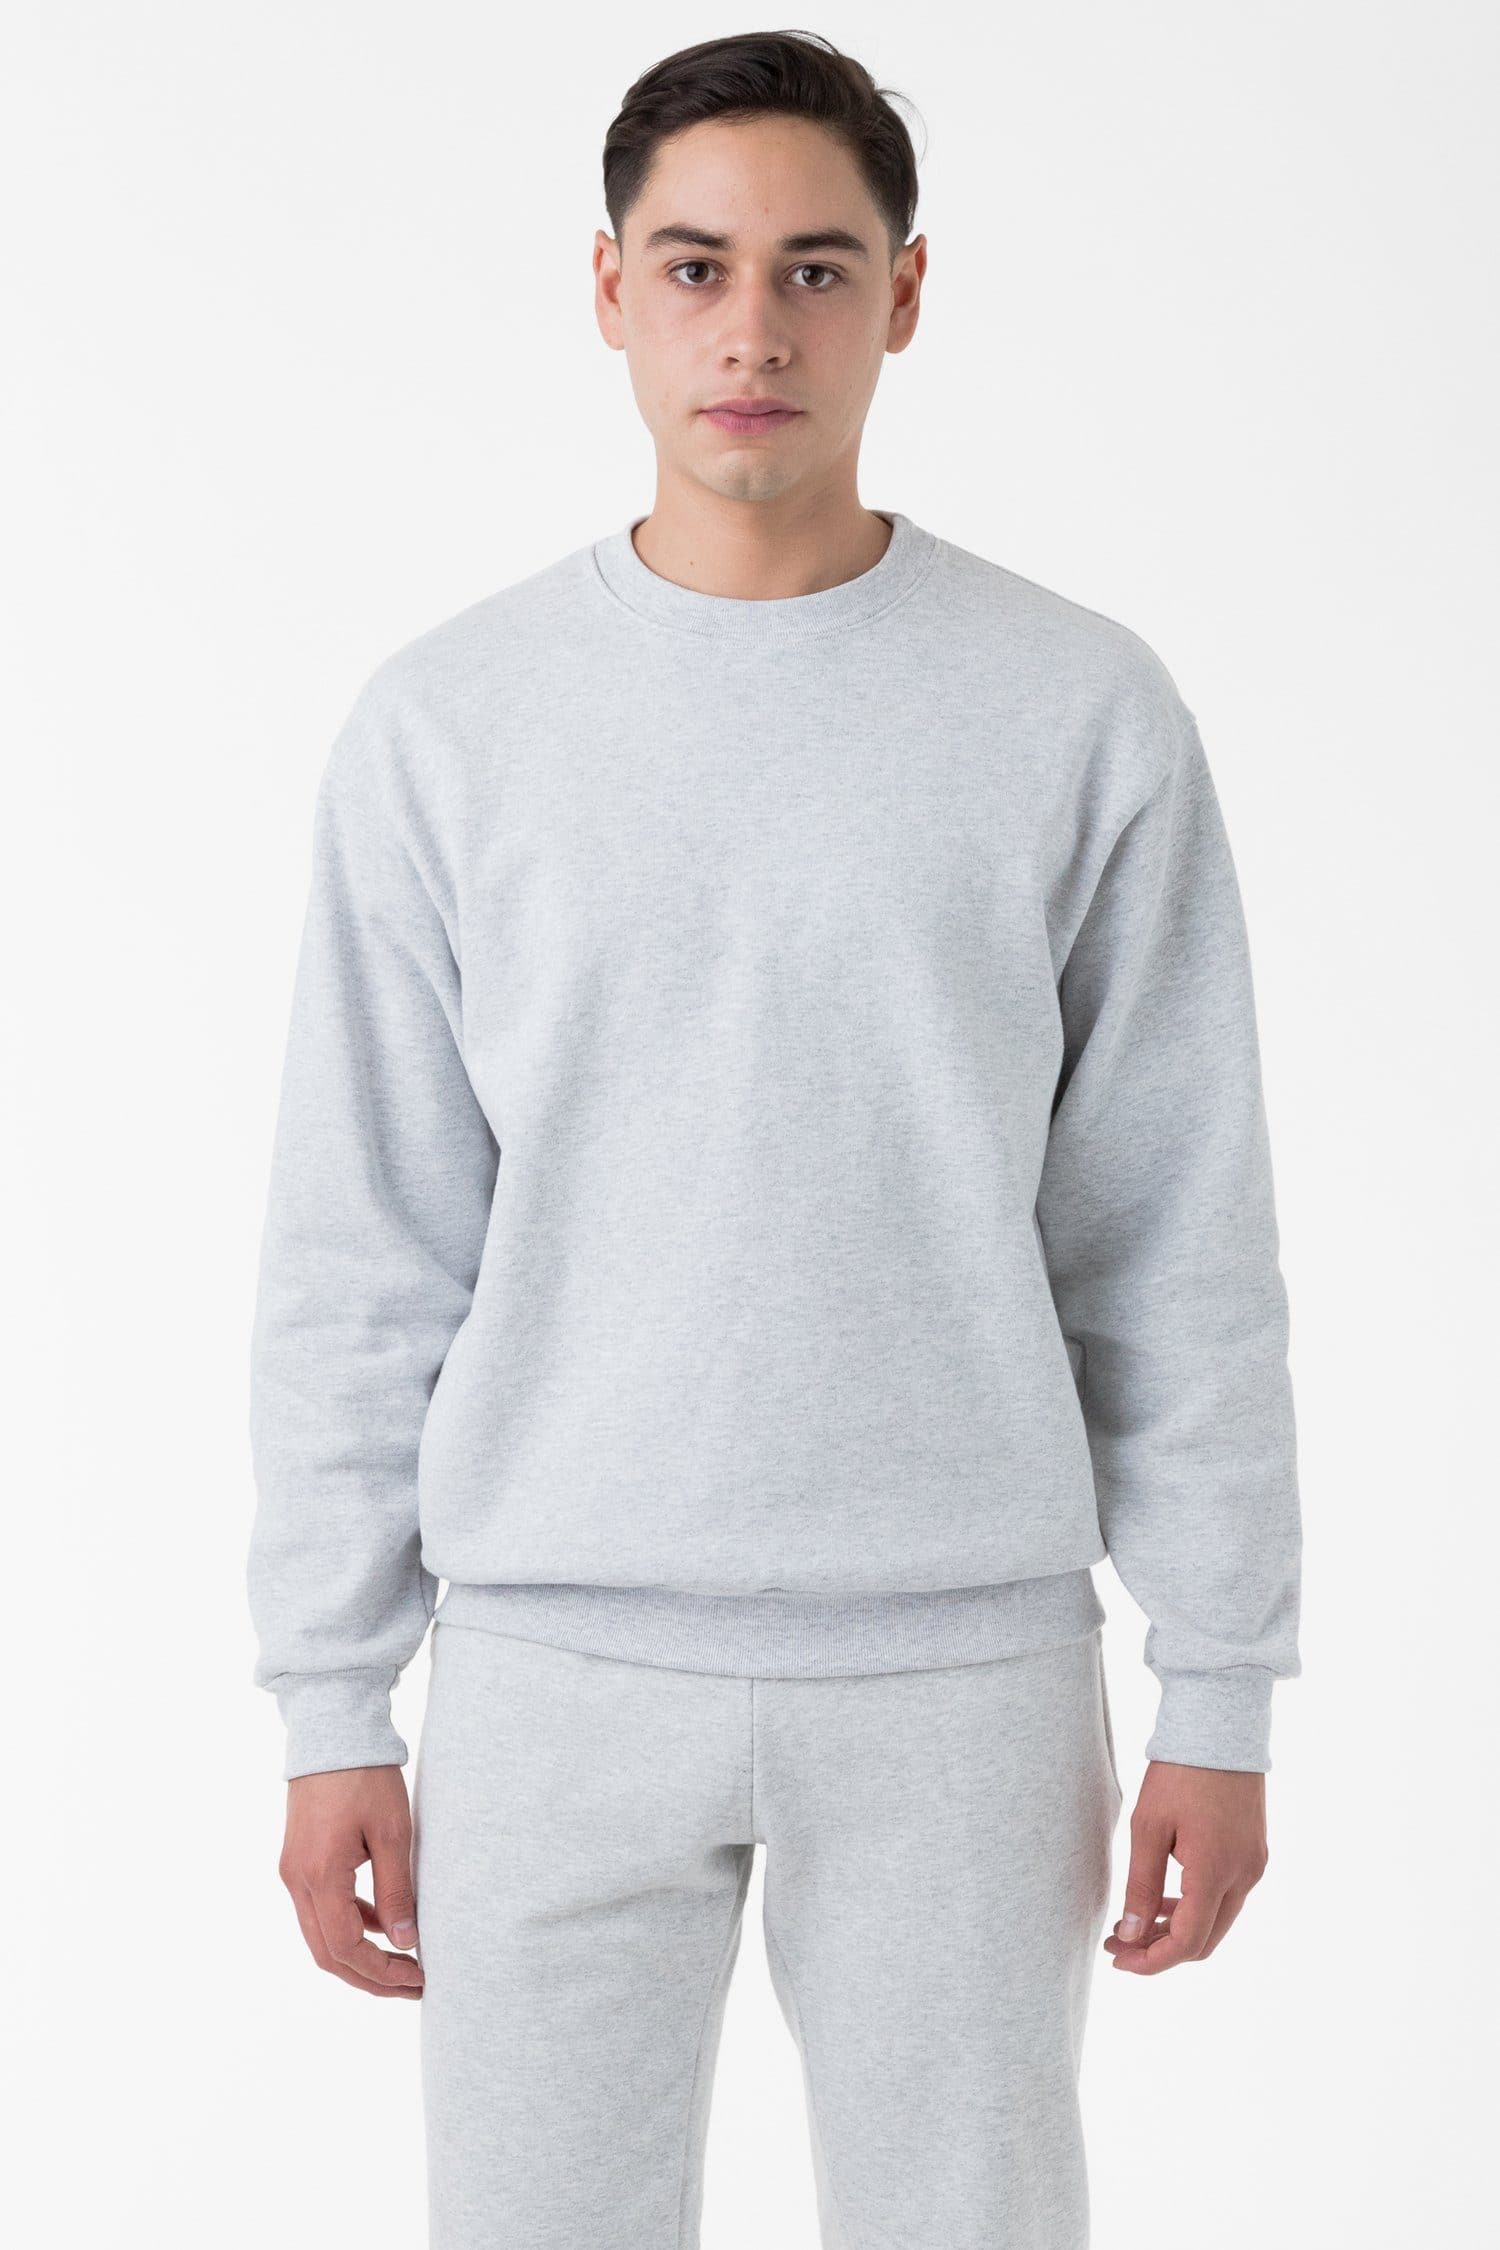 HF07 - Heavy Fleece Crewneck Sweatshirt (Piece Dye) – Los Angeles Apparel